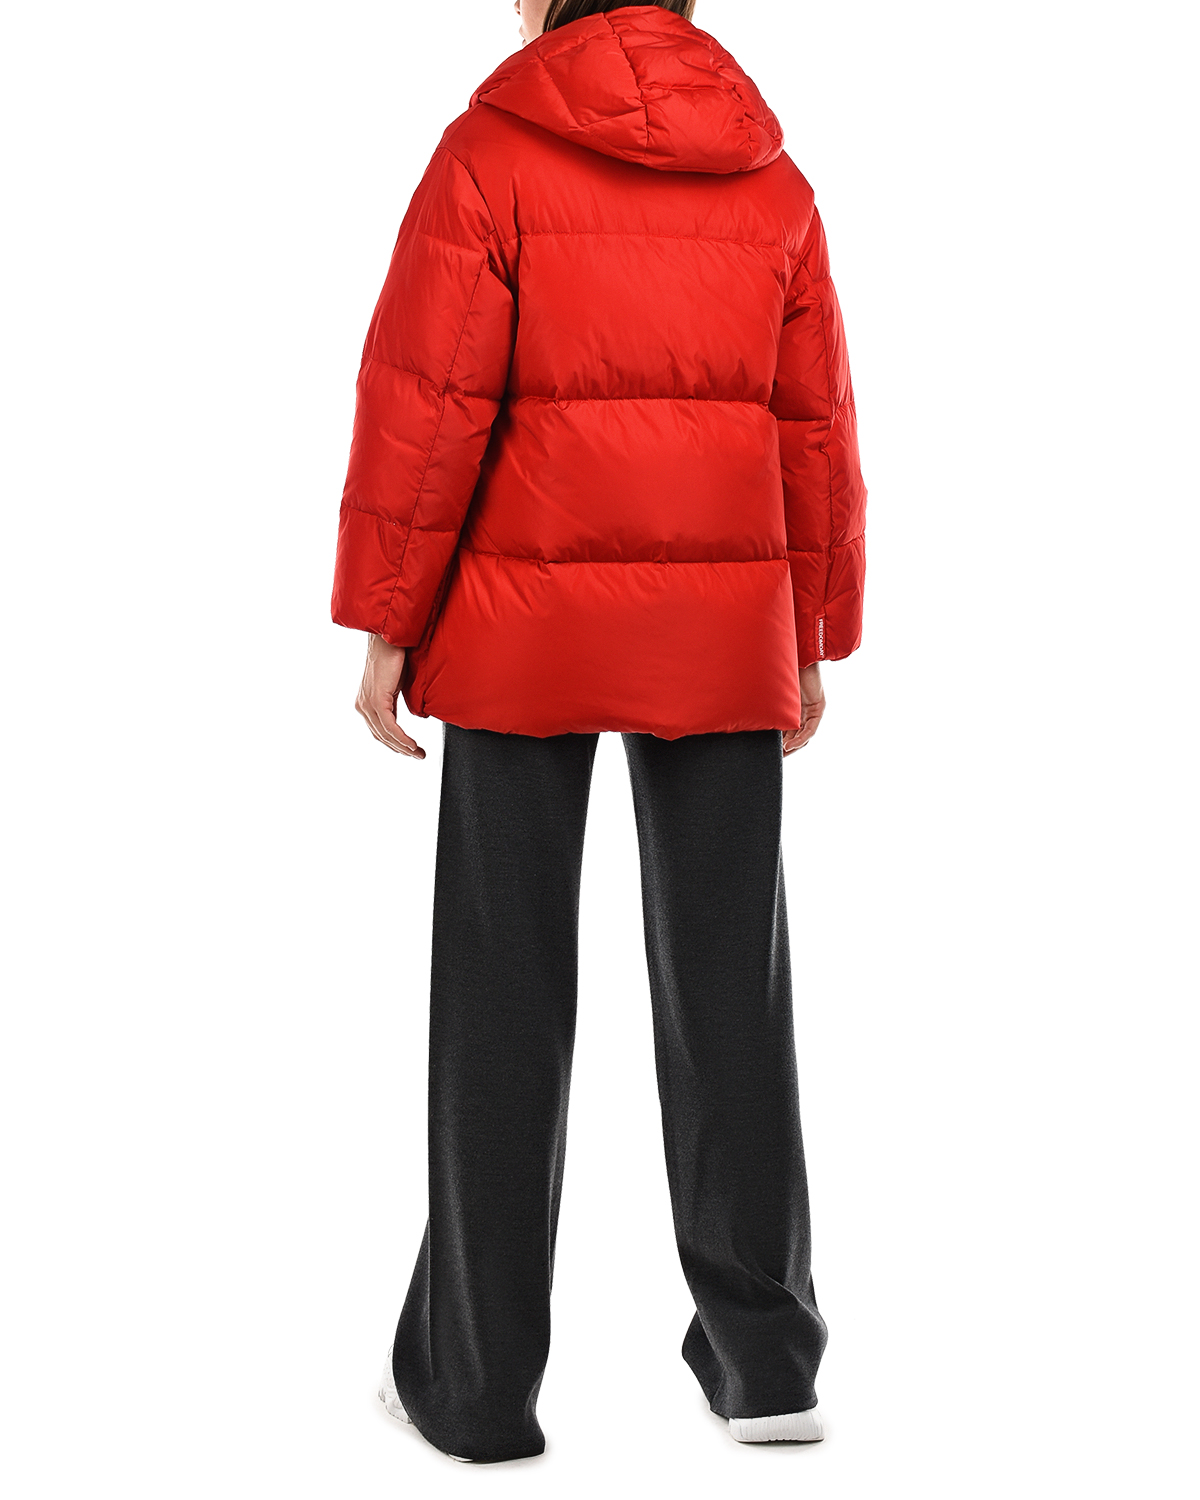 Красная куртка с контрастной подкладкой Freedomday, размер 38, цвет красный - фото 4